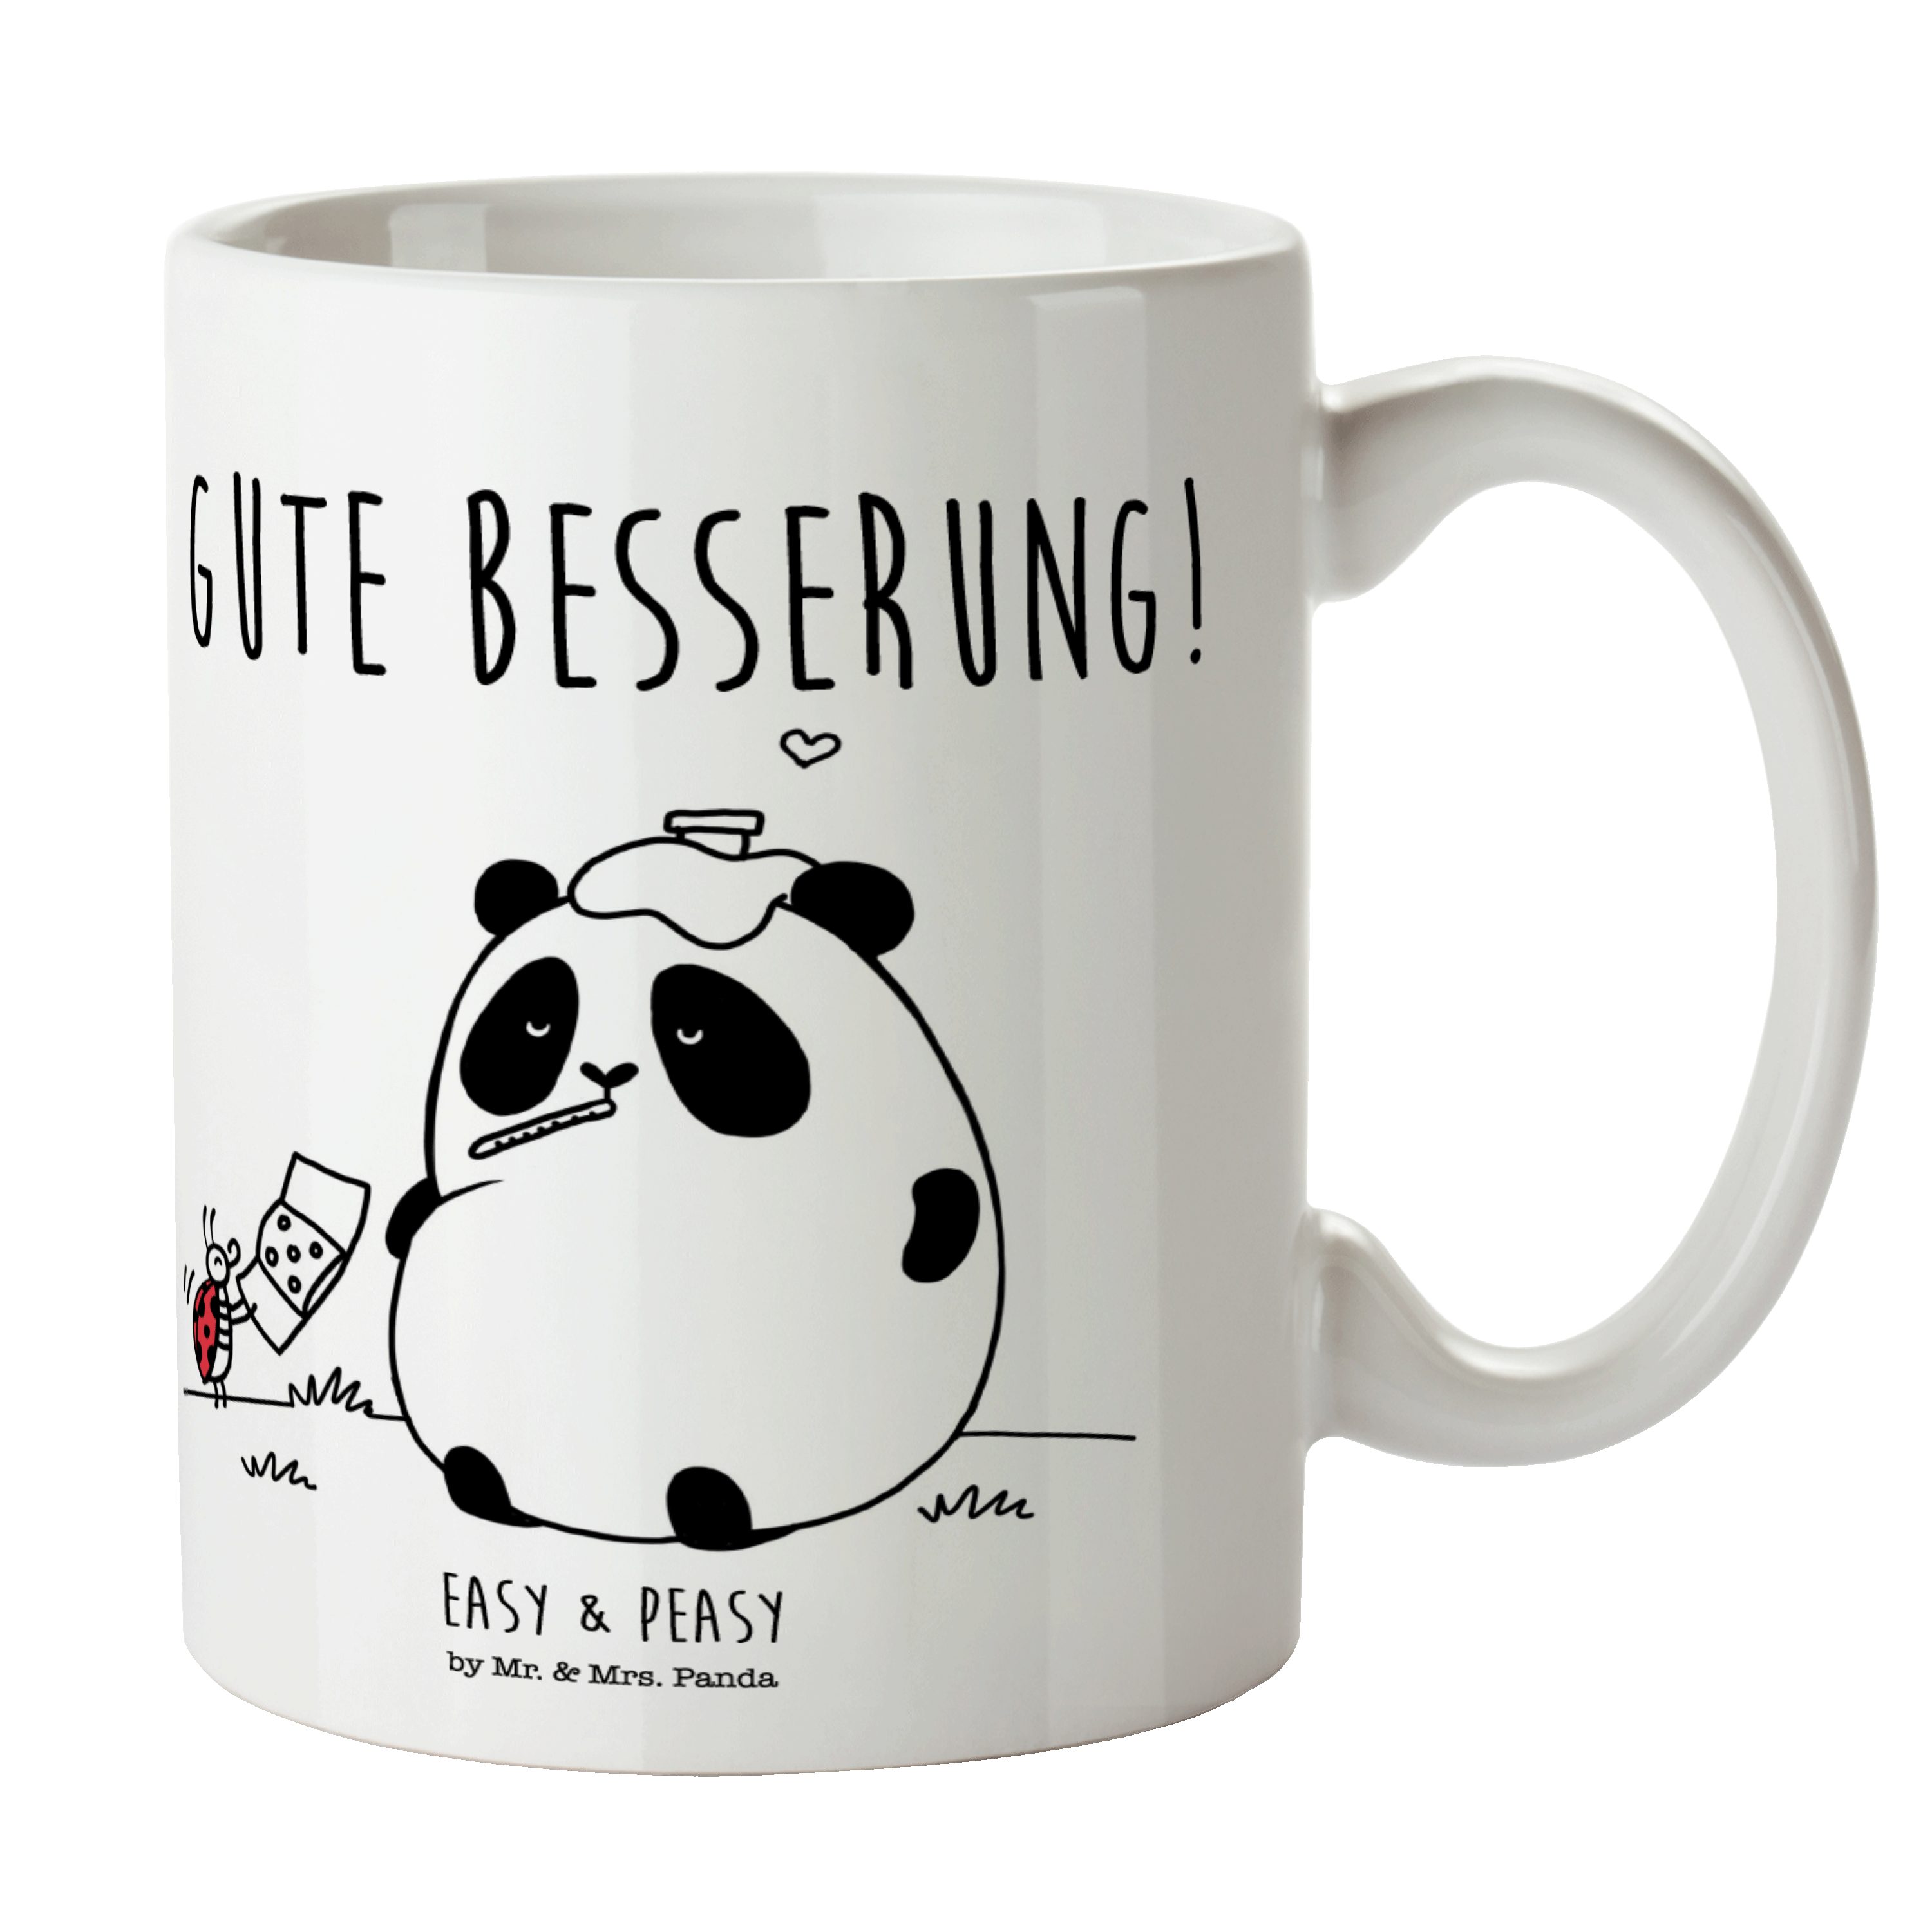 Mr. & Mrs. Panda Tasse Easy & Peasy Gute Besserung - Weiß - Geschenk, Büro Tasse, Tasse, Ker, Keramik